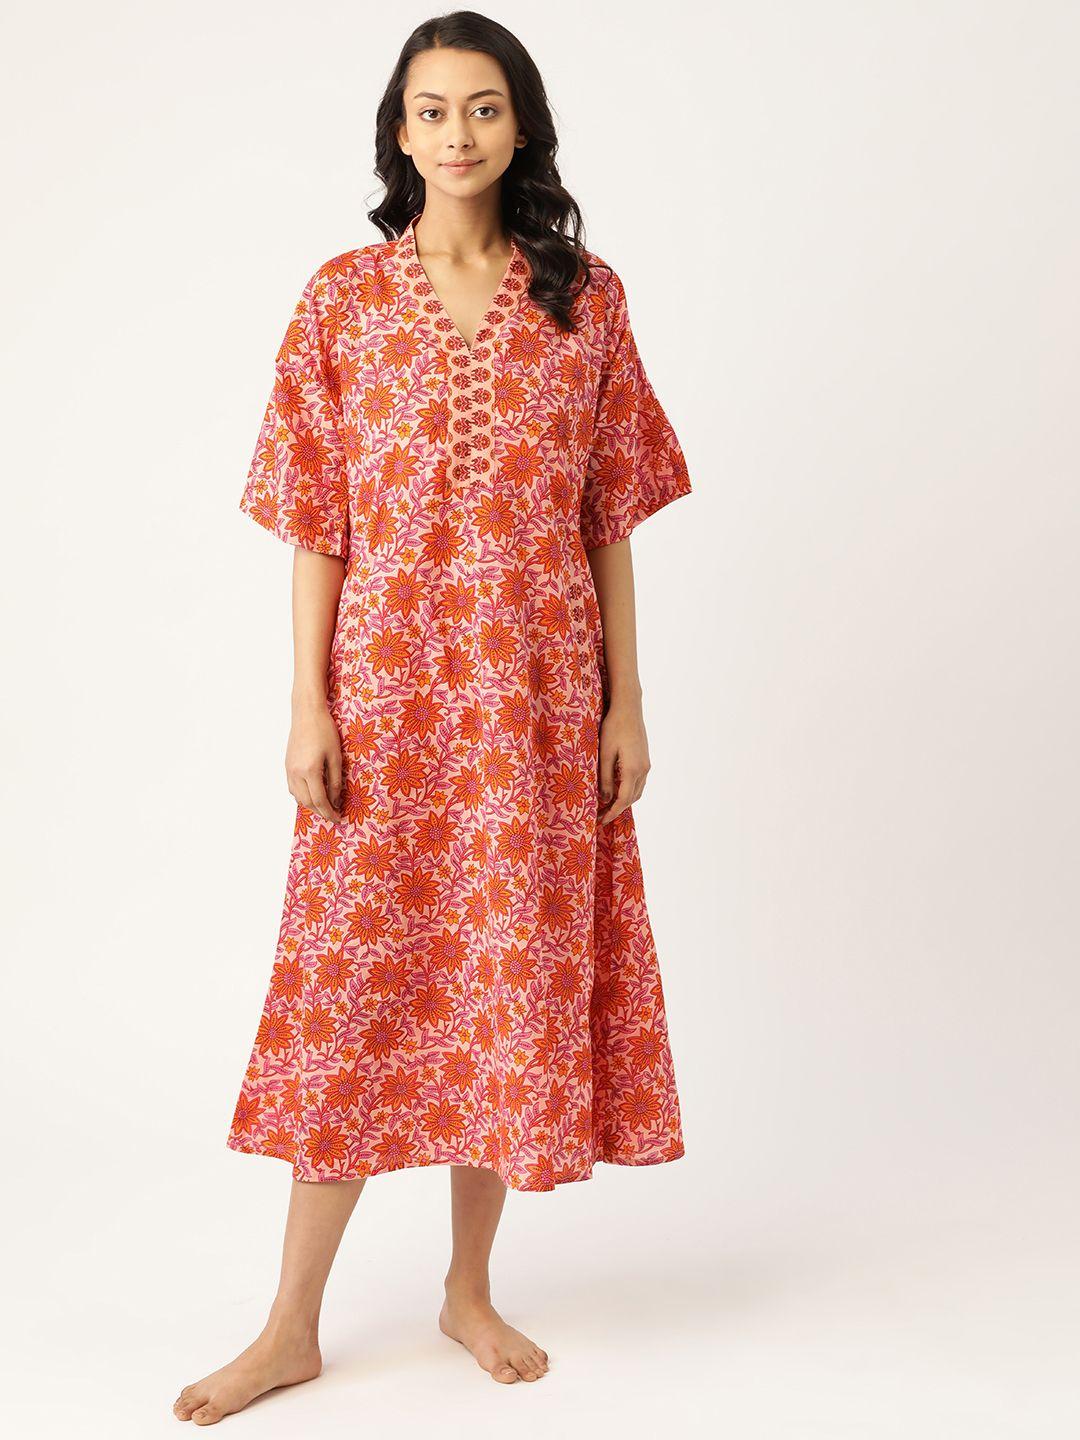 mabish by sonal jain pink & mustard ethnic motifs print pure cotton midi nightdress